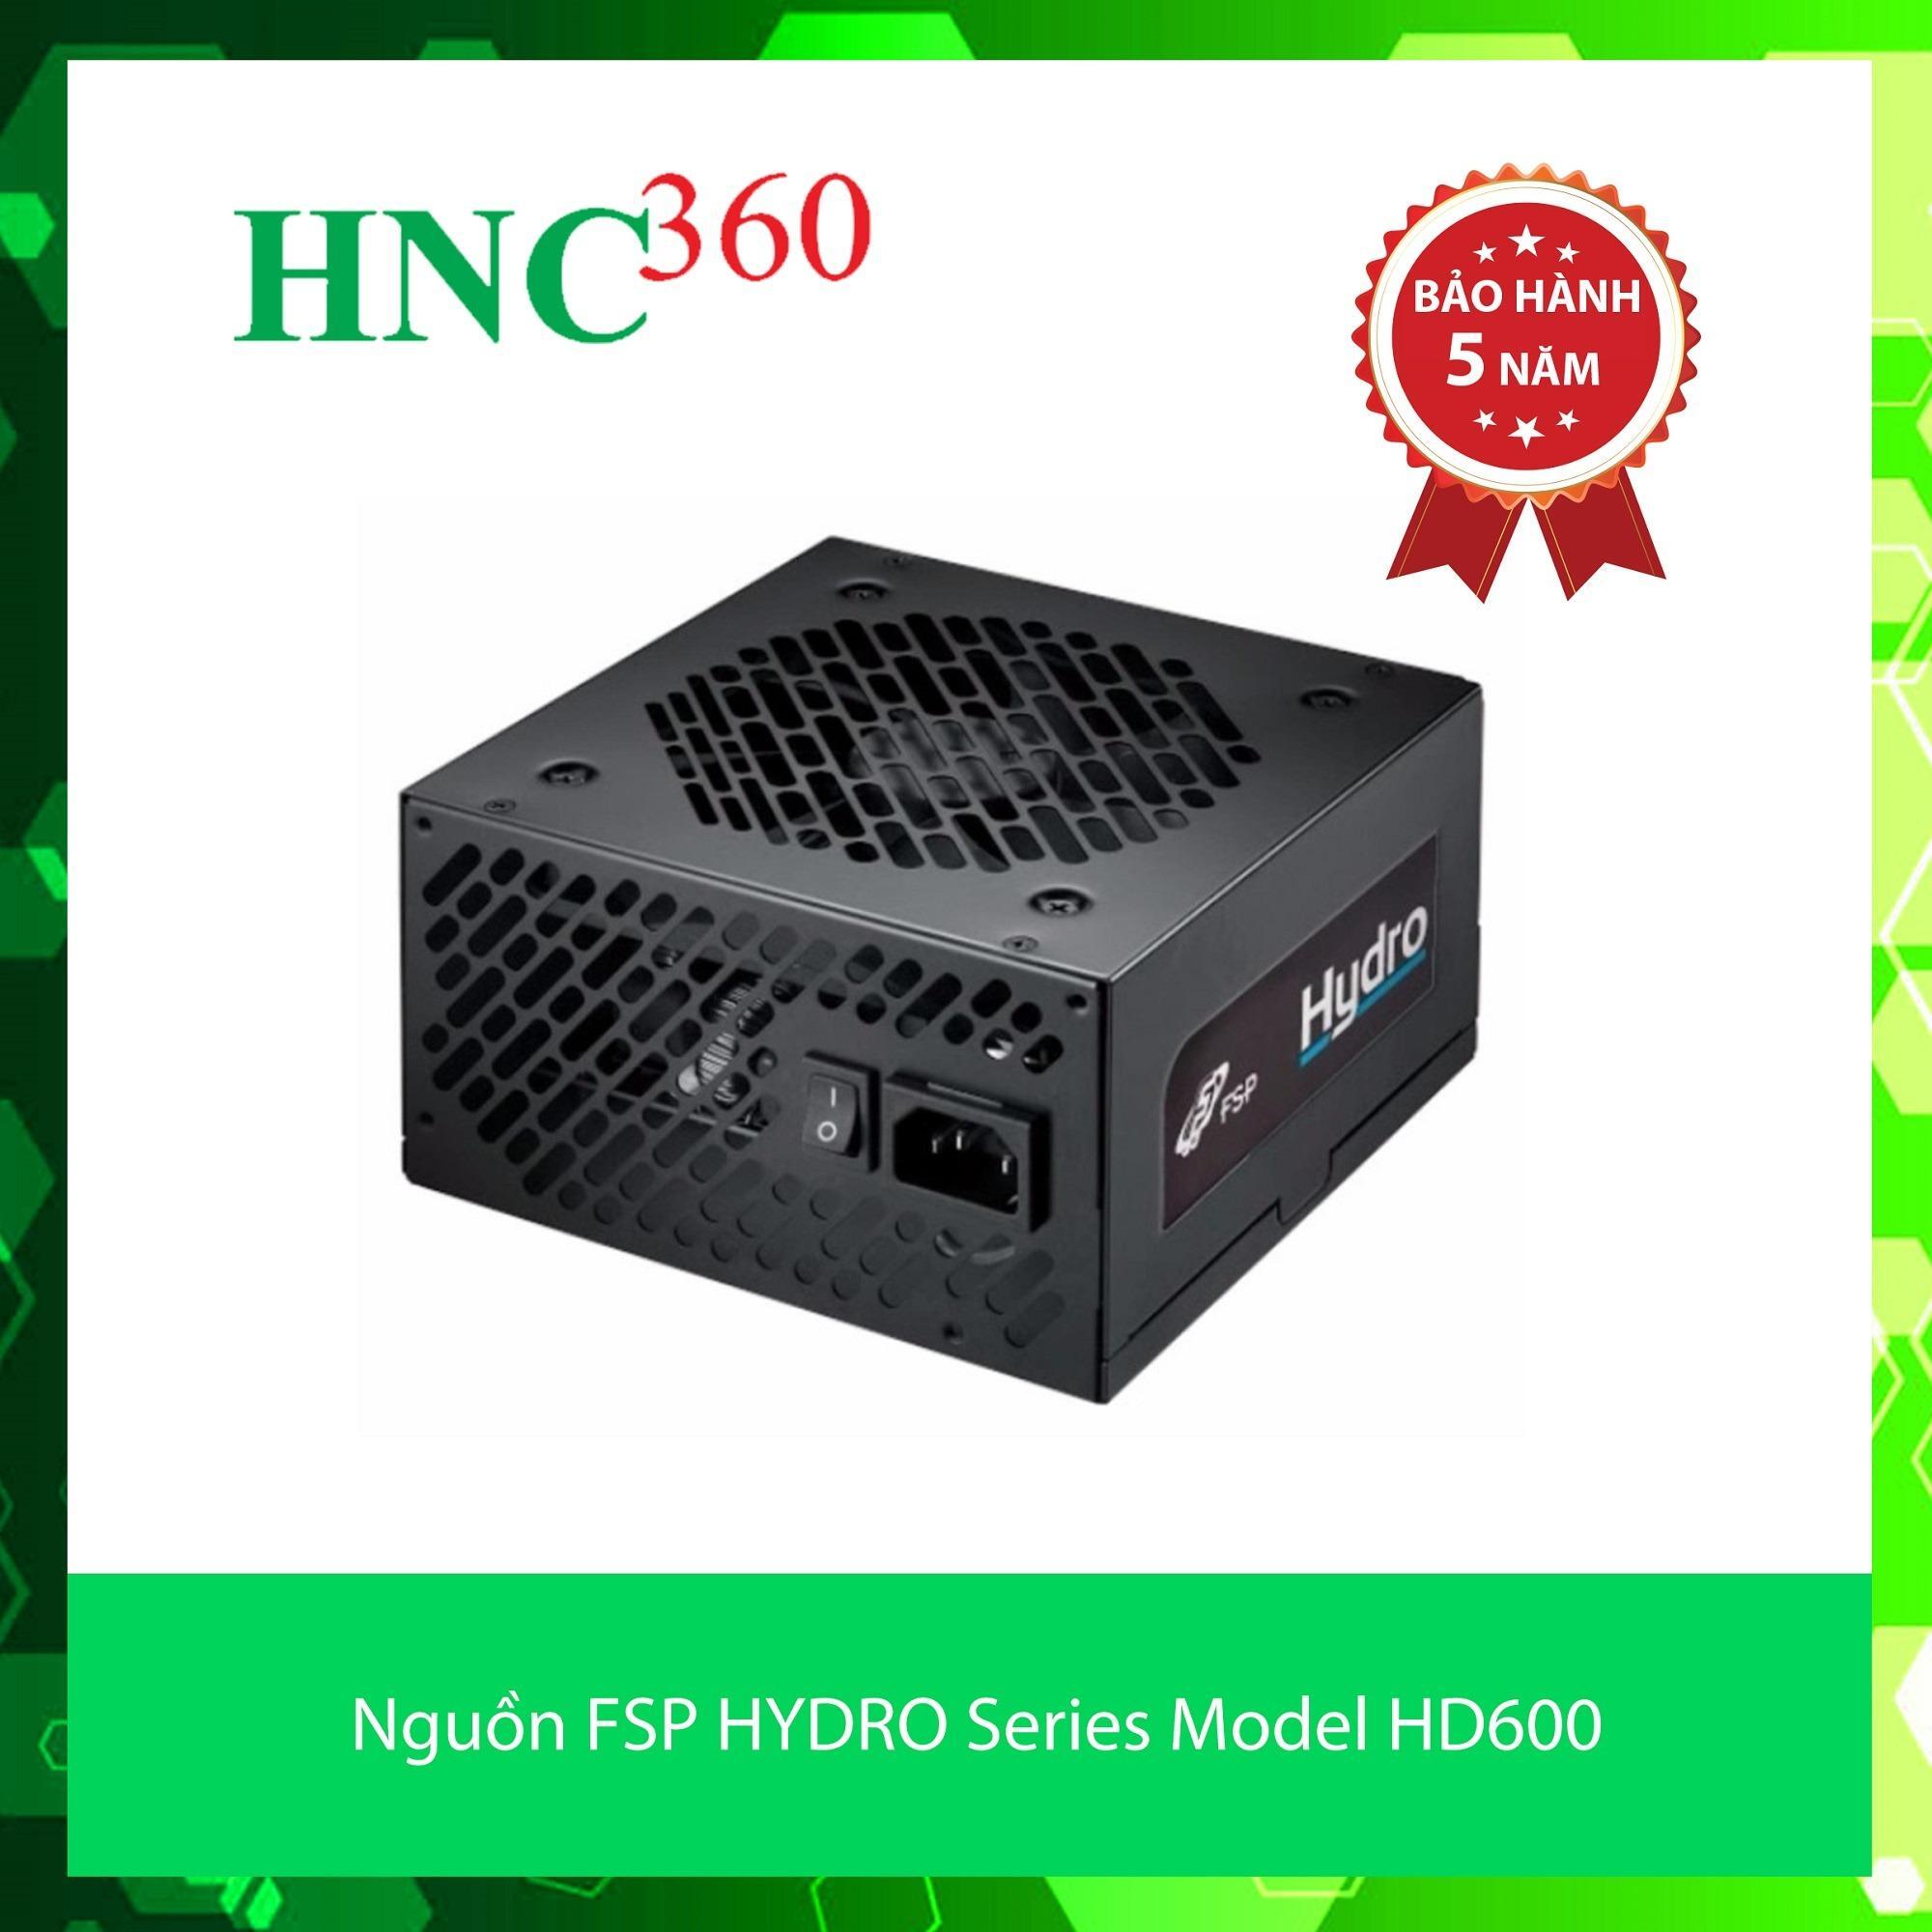 Nguồn - Power Supply FSP Hydro 600W (HD600)